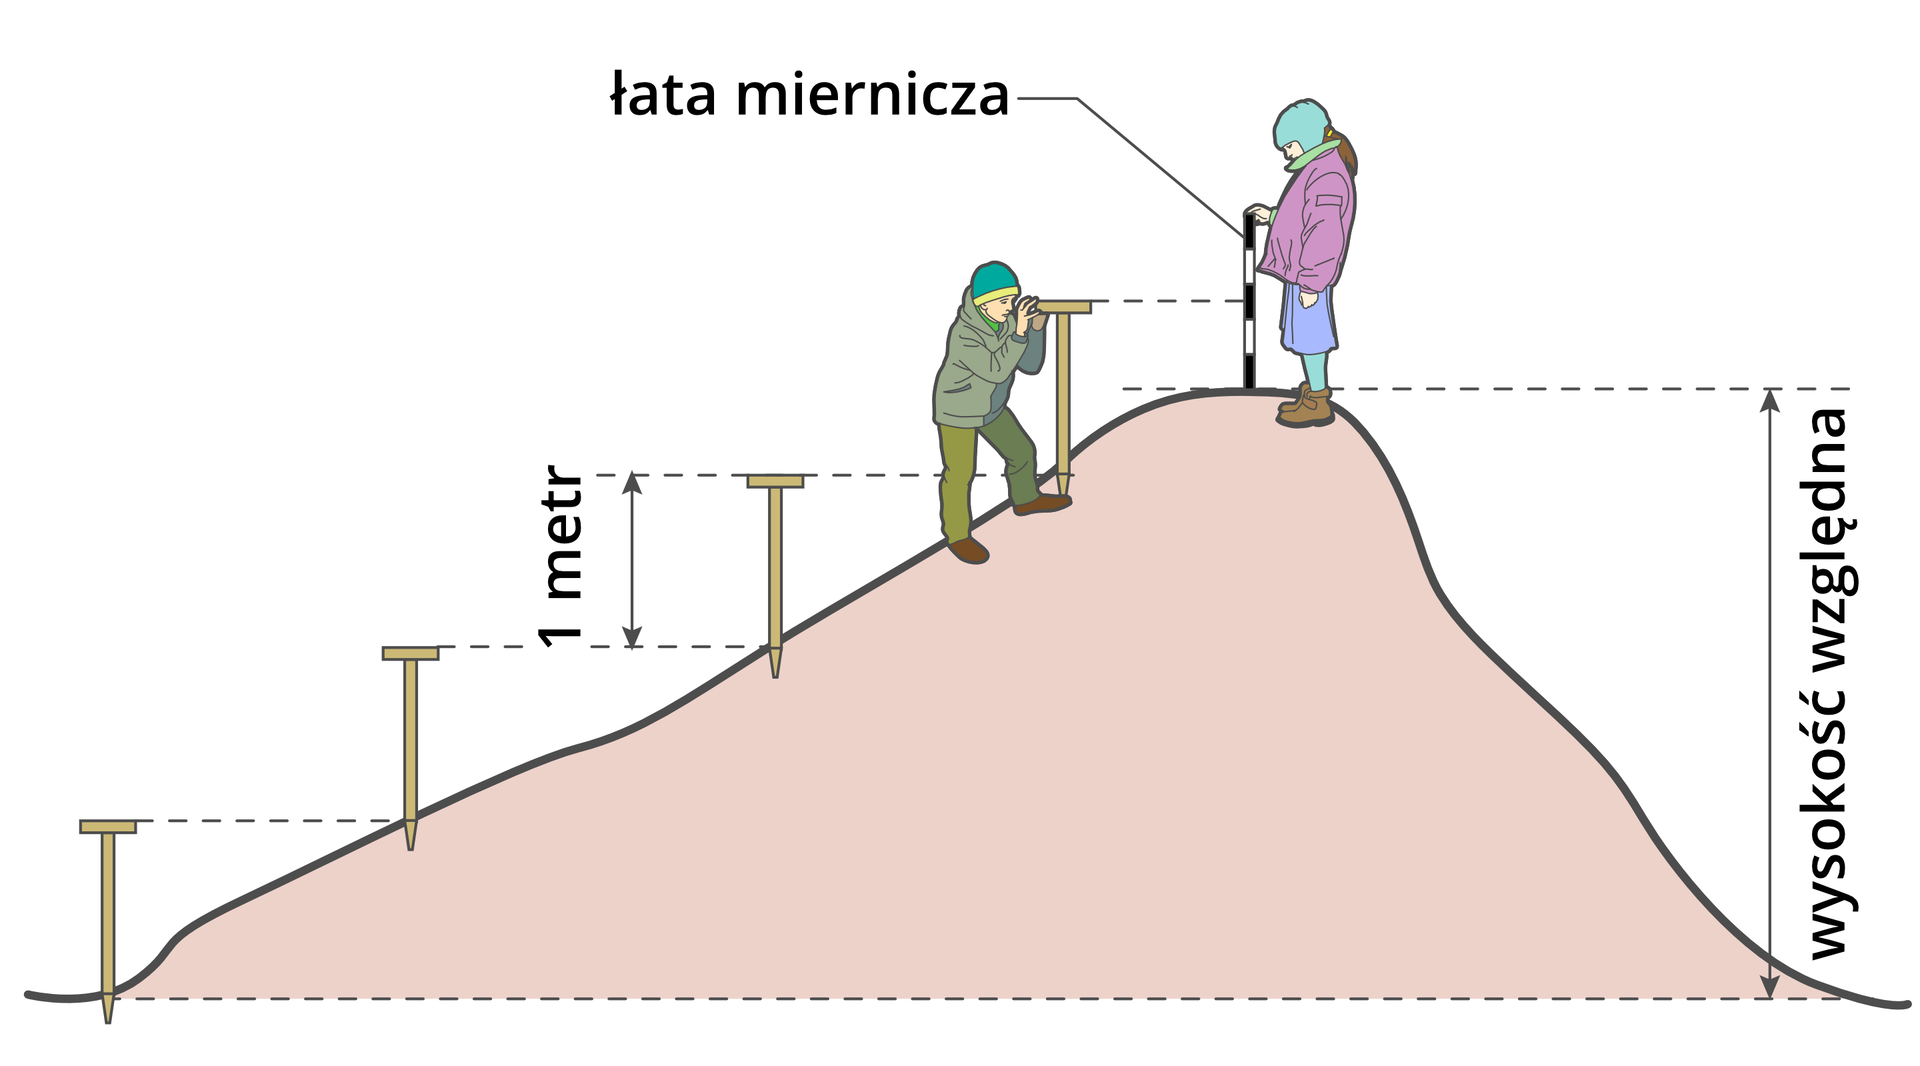 Ilustracja przedstawia pagórek, którego wysokość jest mierzona od podstawy do szczytu. Wysokość obiektu wskazuje pionowa linia. Linia sięga od podstawy do szczytu wzgórza. Jest to wysokość względna. Na szczycie stoi uczennica. Uczennica trzyma łatę mierniczą. Uczennica skierowana jest w stronę łagodnego zbocza pagórka. Poniżej uczeń odczytuje wysokość z łaty za pomocą celownika w drewnianym niwelatorze szkolnym. Poniżej ucznia wbite trzy niwelatory szkolne przedstawiające, jak uczeń i w którym miejscu uczeń wbijał je poprzednio. Pierwszy był wbity u podnóża pagórka, drugie miejsce w które został wbity niwelator jest na zboczu pagórka o jeden metr wyżej, czyli o długość niwelatora. Poprowadzona jest pozioma przerywana linia od górnego końca pierwszego niwelatora do podstawy – miejsca wbicia drugiego. Trzeci i czwarty niwelator wbite są analogicznie każdy o metr wyżej od poprzedniego i podobnie poprowadzone są przerywane linie.